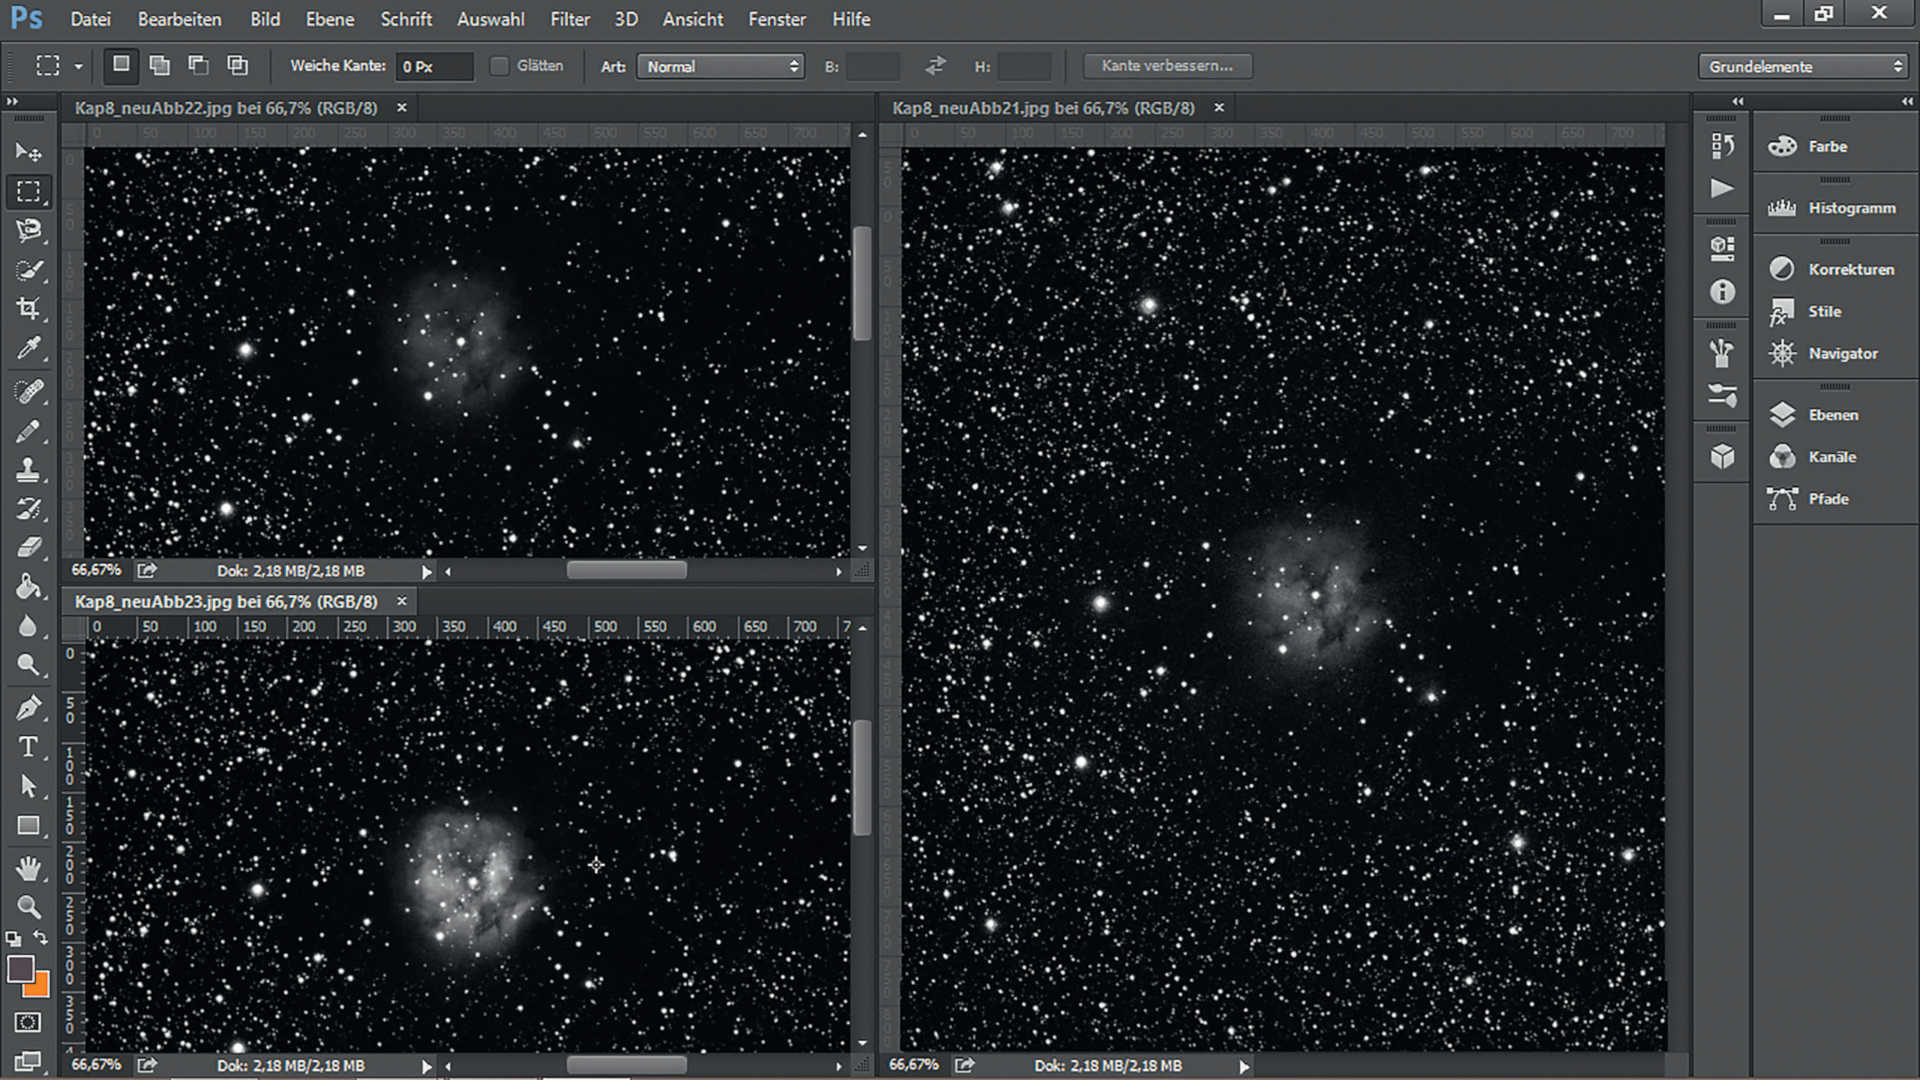 Photo de la nébuleuse du Cocon (IC5146) dans la constellation du Cygne et comment elle a été réalisée : alignement, ajout de l’empilement d’images composé de huit prises de vues individuelles avec filtres rouge, vert et bleu, et augmentation du contraste. Caméra SBIG STF-8300 sur astrographe 200/600 mm, temps d’exposition total : 72 minutes, filtres RVB. U. Dittler